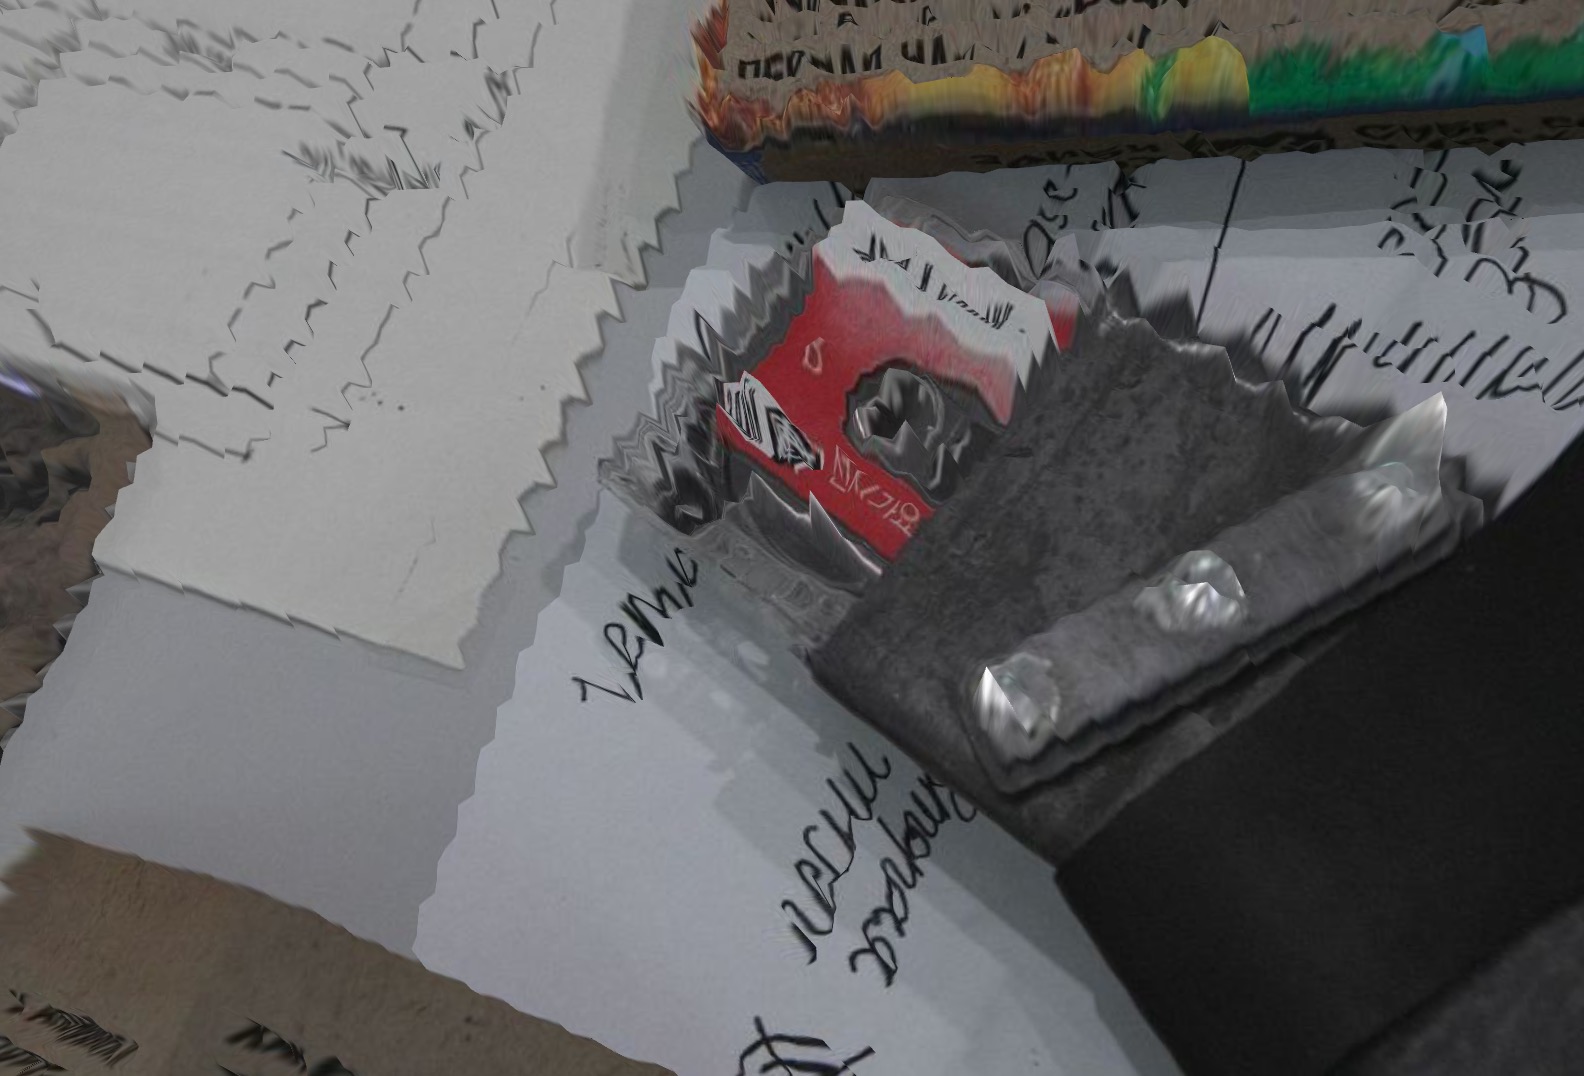 Размытое фото, кассета для диктофона лежит на столе с вырезками газет и листами с записями